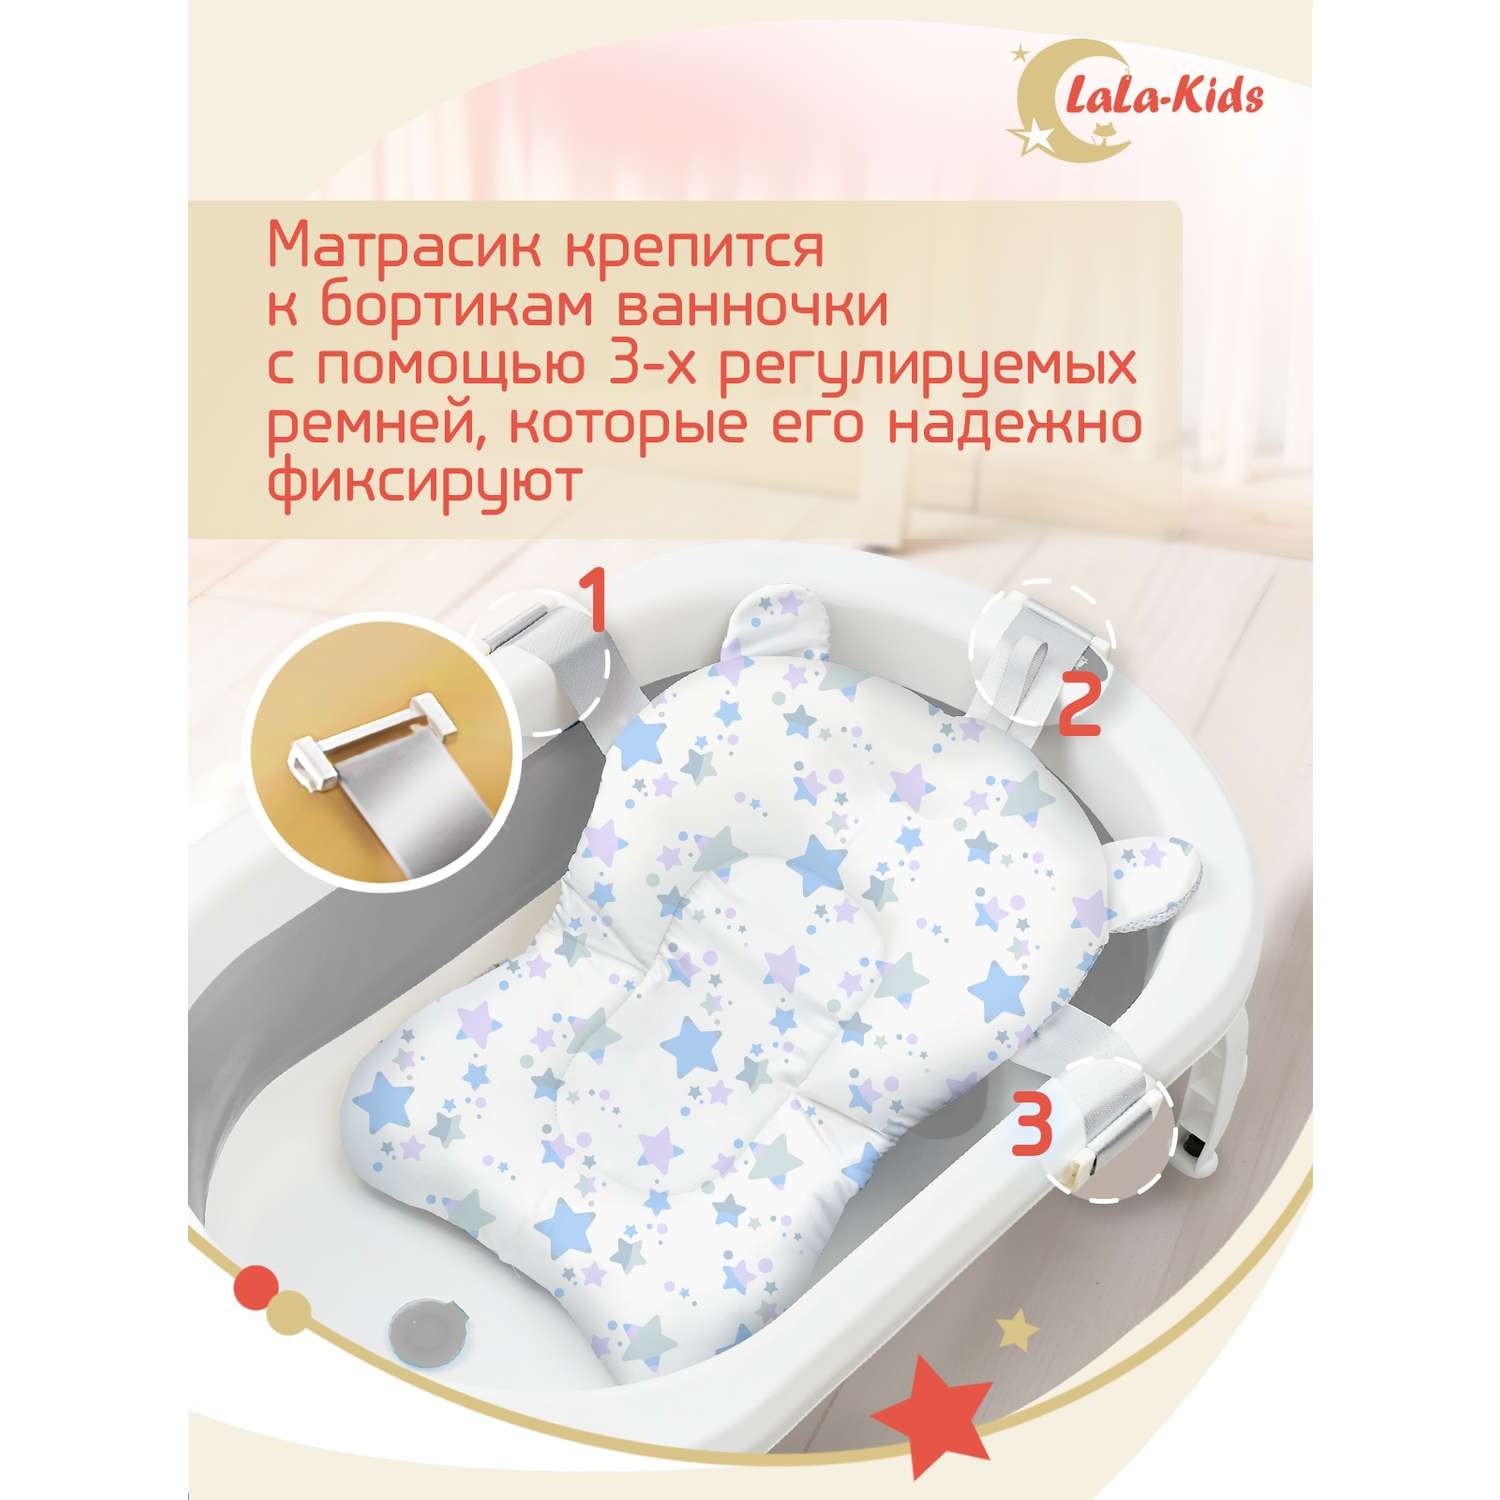 Складная ванночка LaLa-Kids для купания новорожденных с термометром и матрасиком в комплекте - фото 15